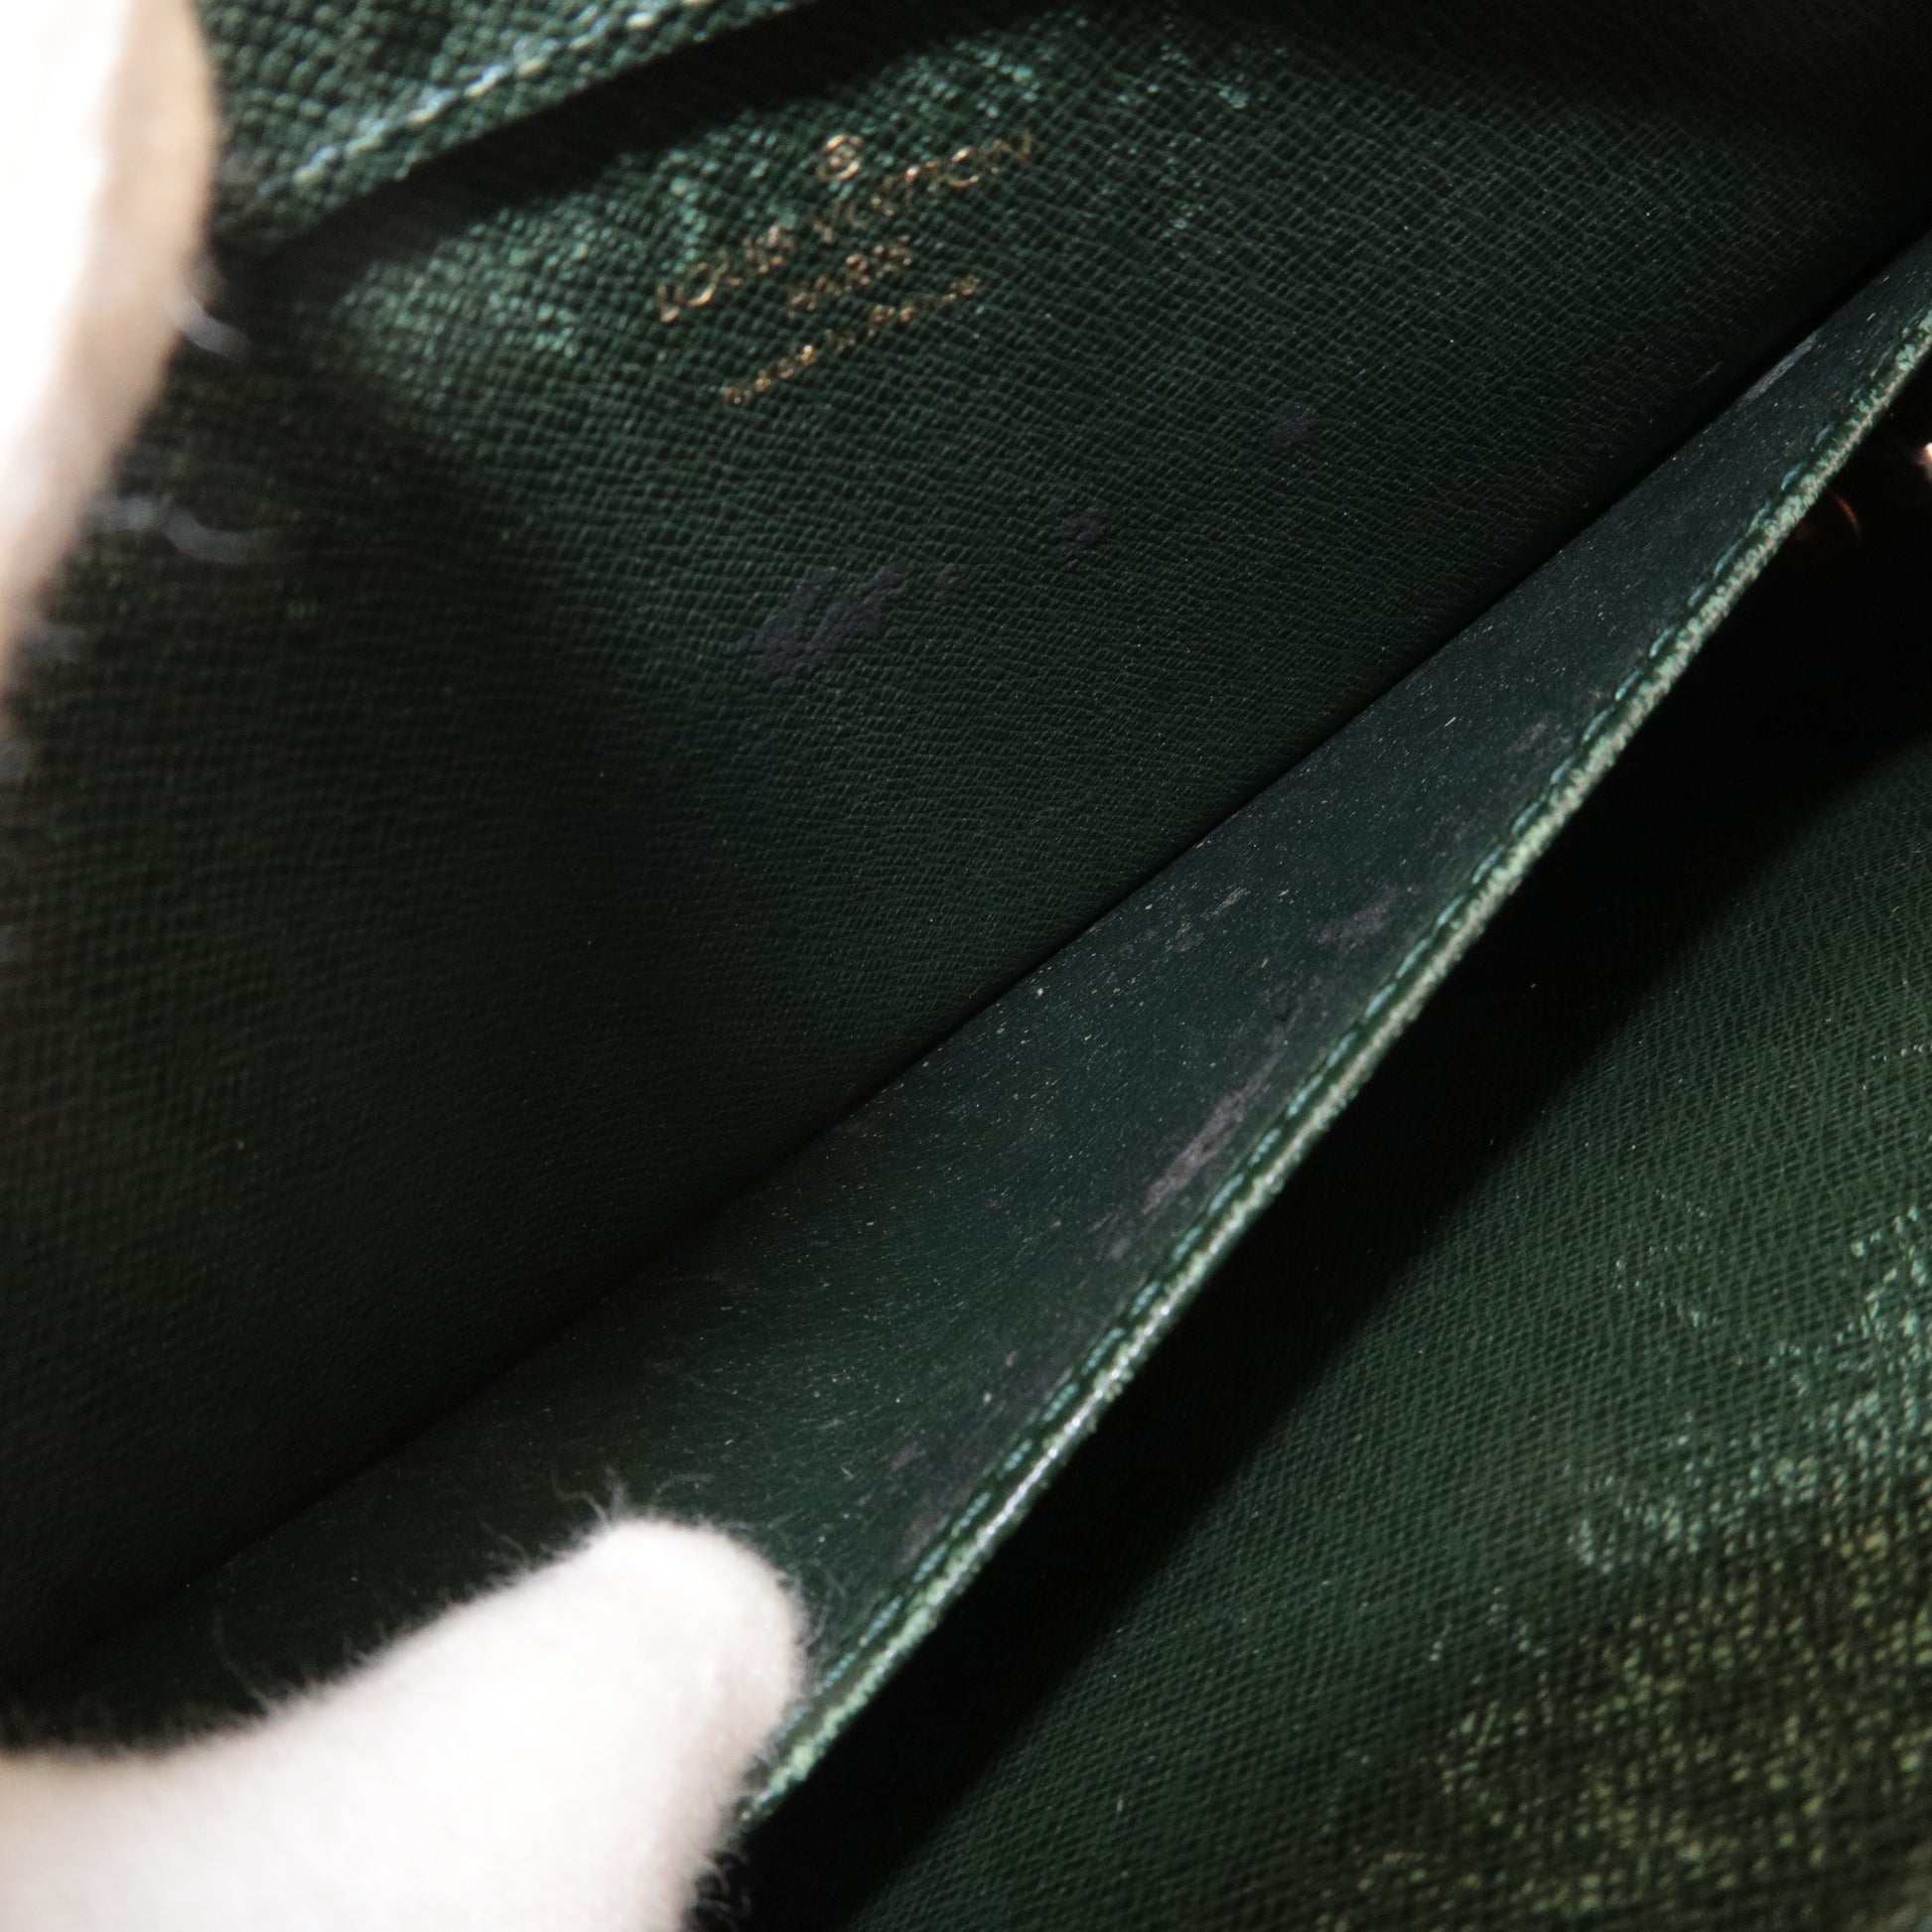 Sell Louis Vuitton Vintage Taiga Briefcase - Green